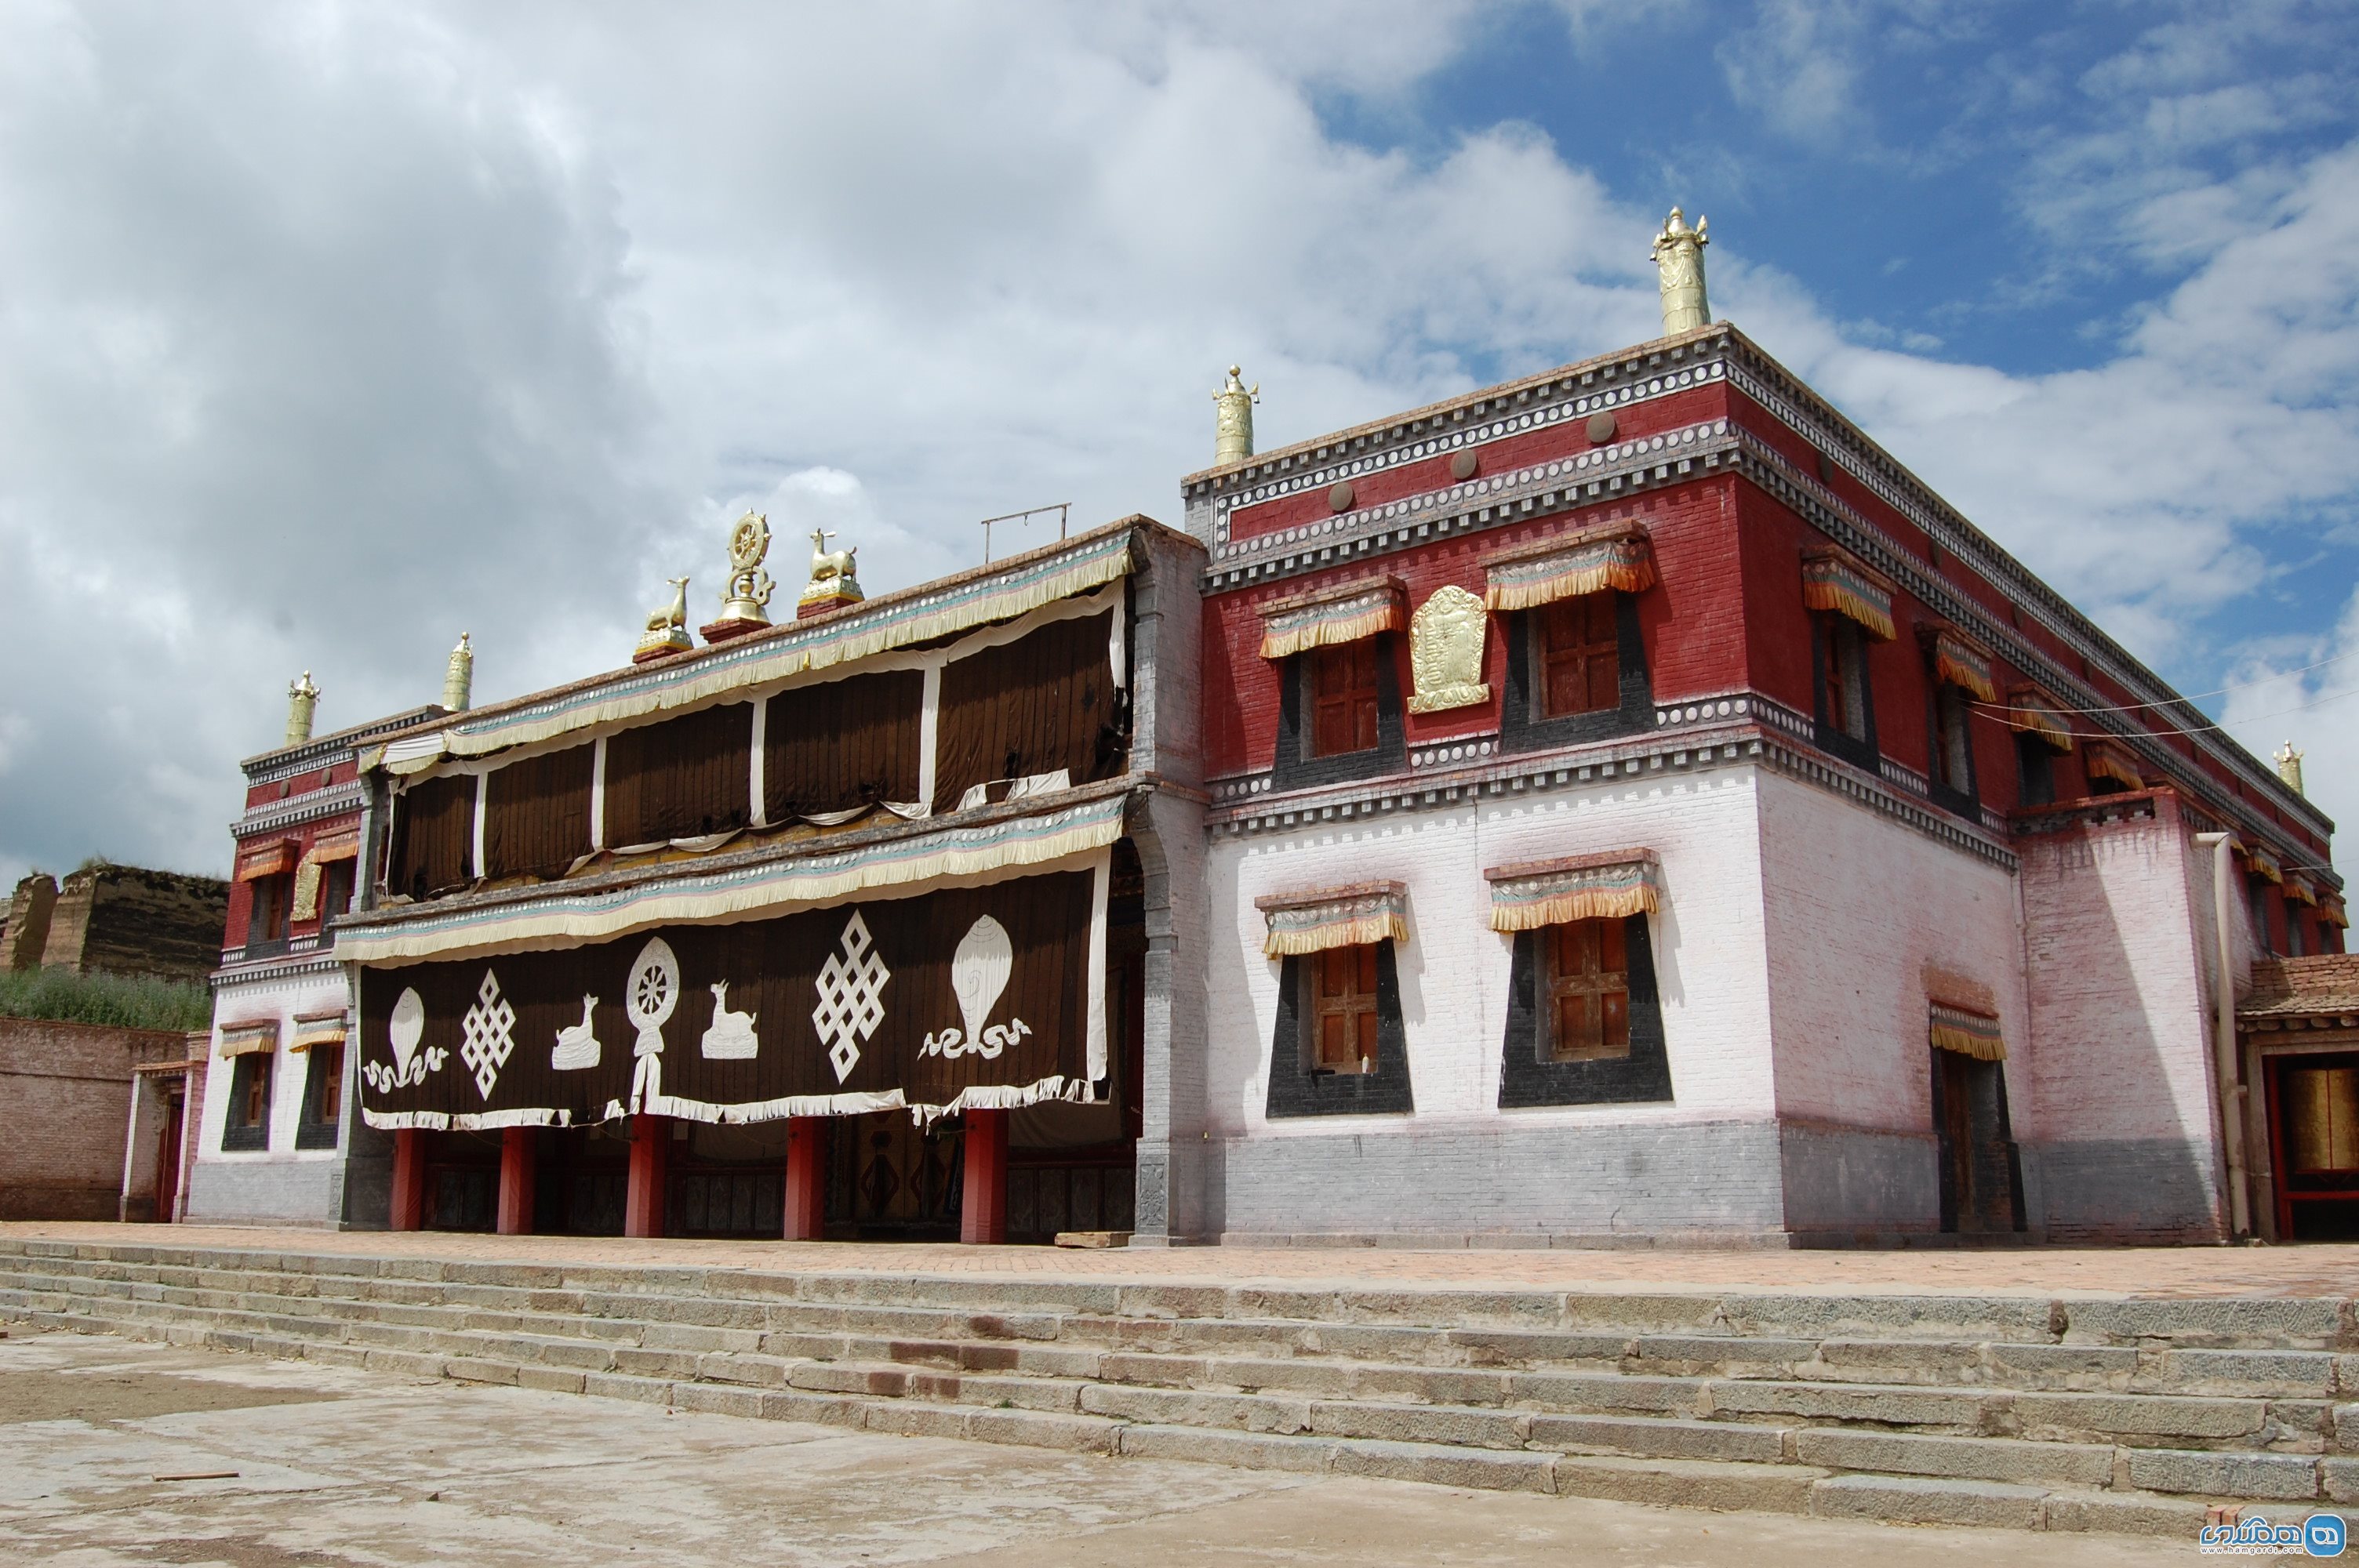 عبادتگاه دچه لهامو - Deche Lhamo